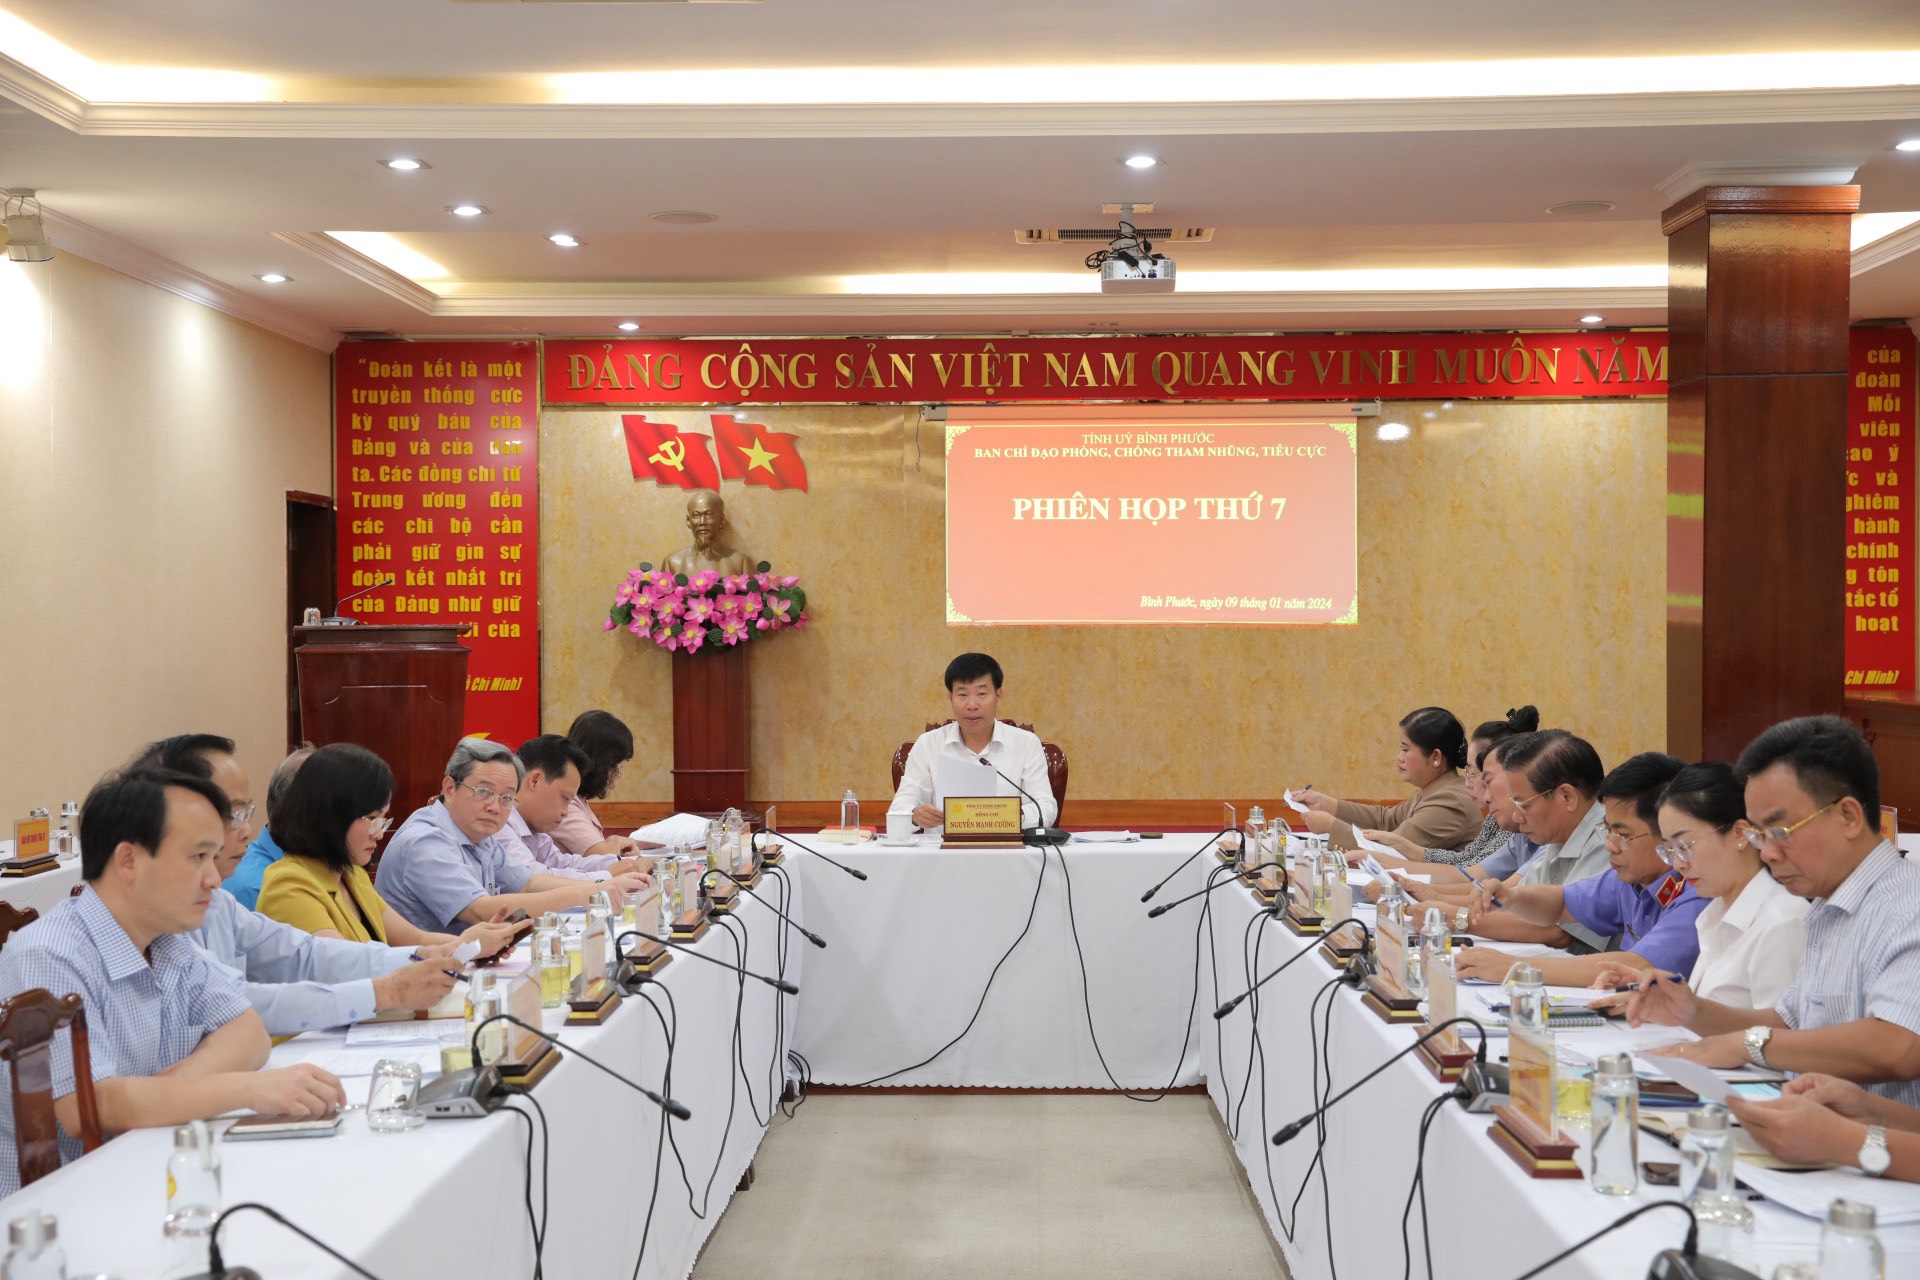 Đồng chí Nguyễn Mạnh Cường, Ủy viên Trung ương Đảng, Bí thư Tỉnh ủy, Trưởng Ban Chỉ đạo chủ trì Hội nghị